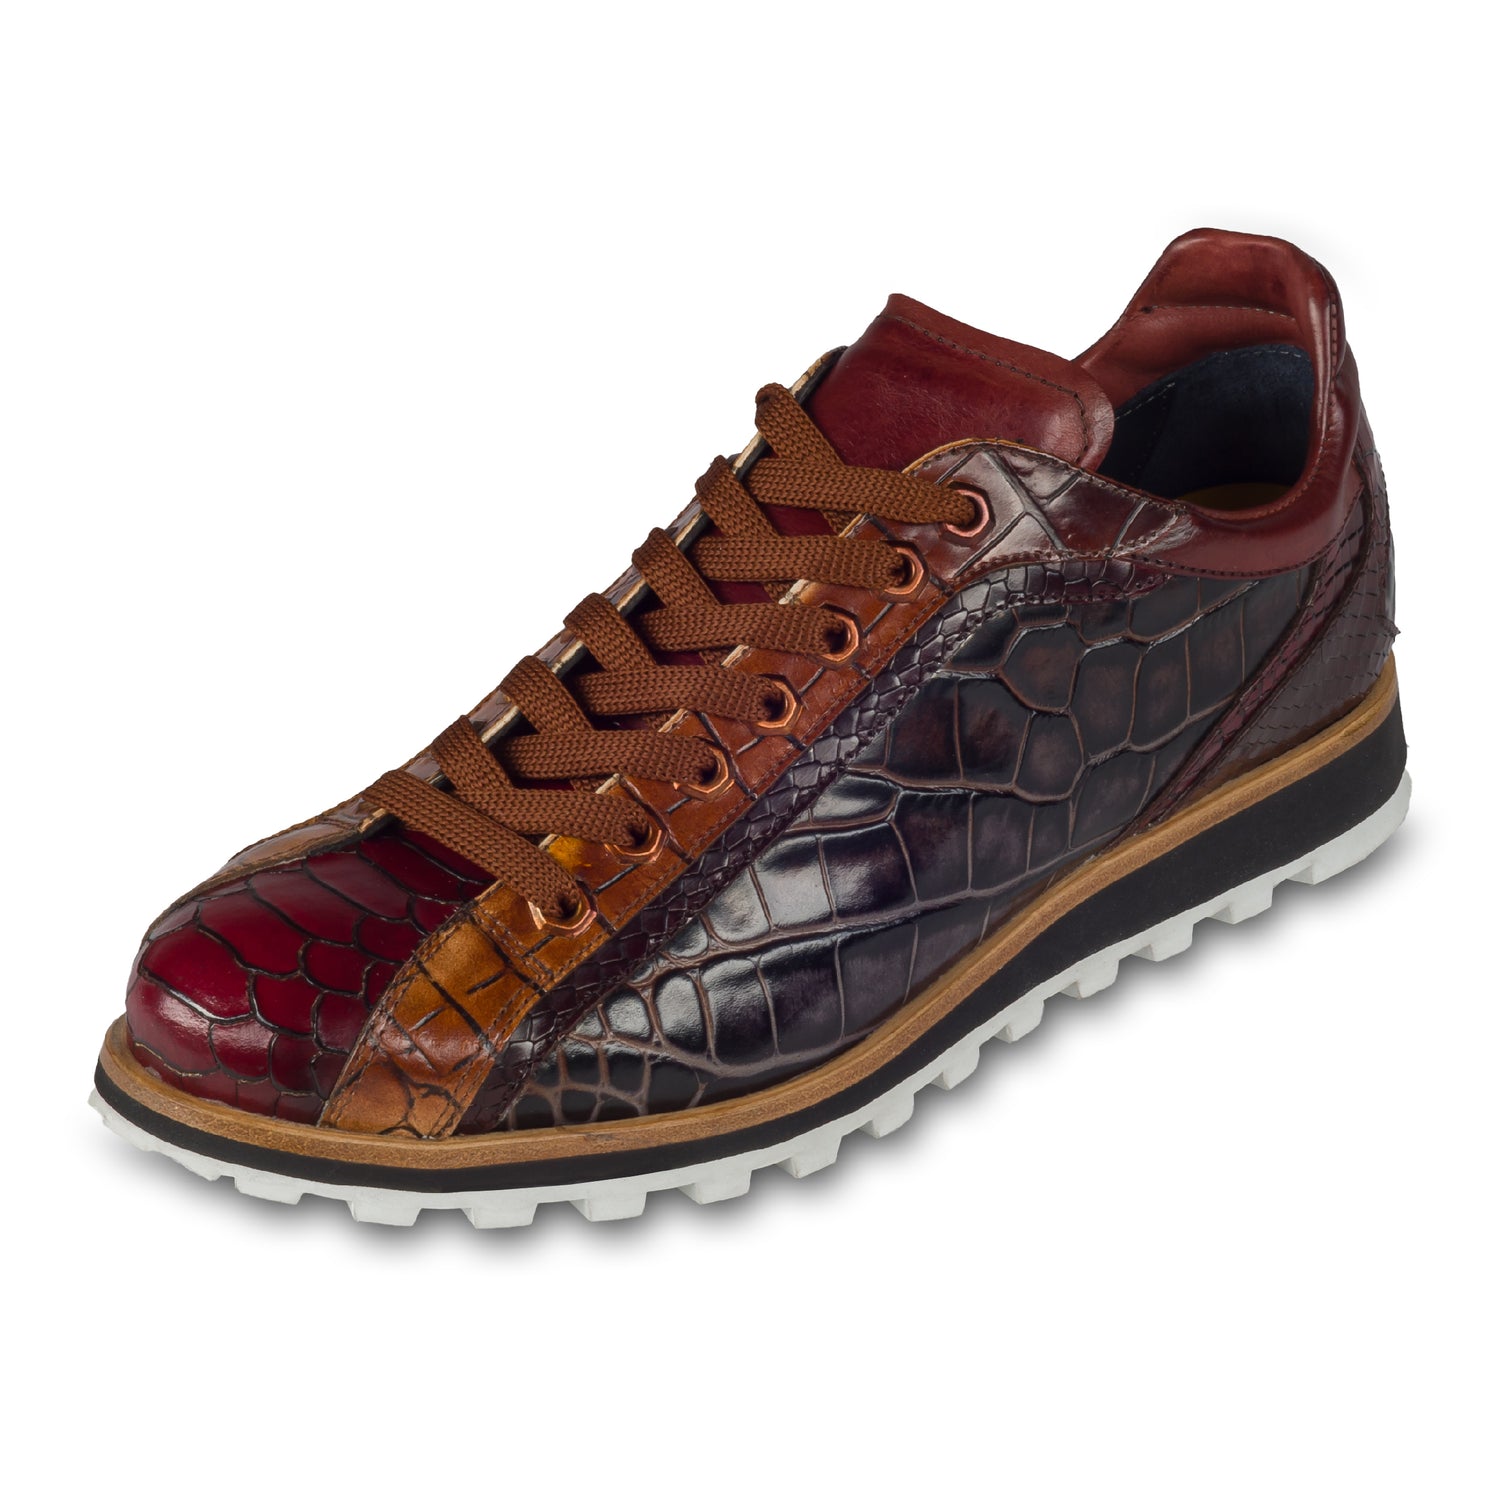 Lorenzi Herren Leder-Sneaker mit Reptil-Prägung in braun/rot. Handgefertigt. Schräge Ansicht linker Schuh. Einfarbige Schnürsenkel cognac braun